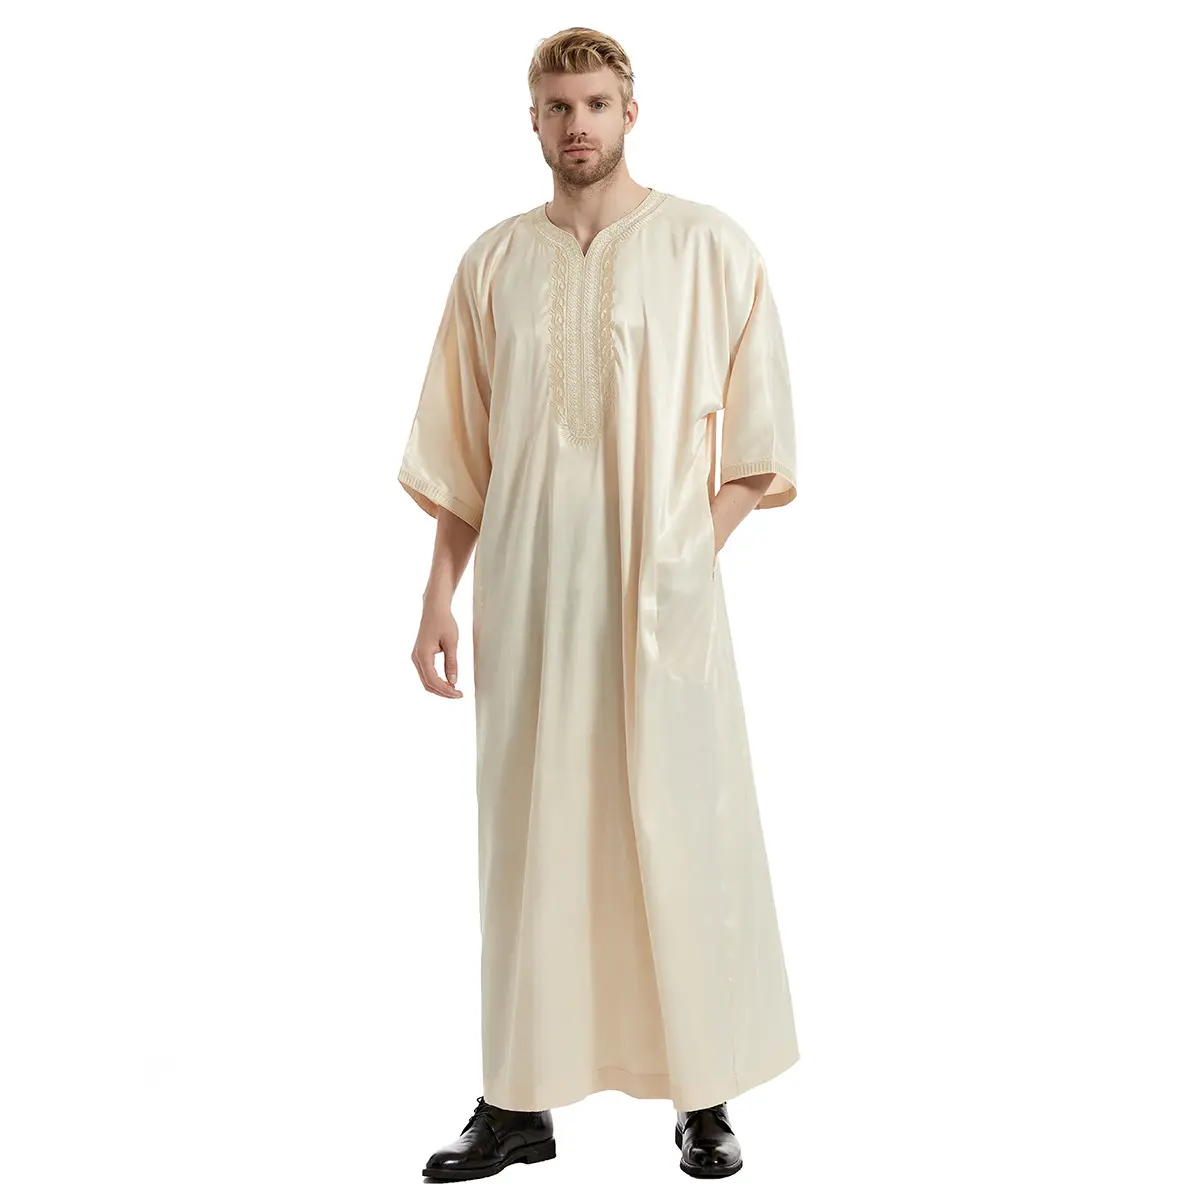 Katı renk saten işlemeli elbisesi Thobe yan cepler Abaya kazak elbiseler orta kollu elbise sıcak satış orta doğu müslüman erkekler